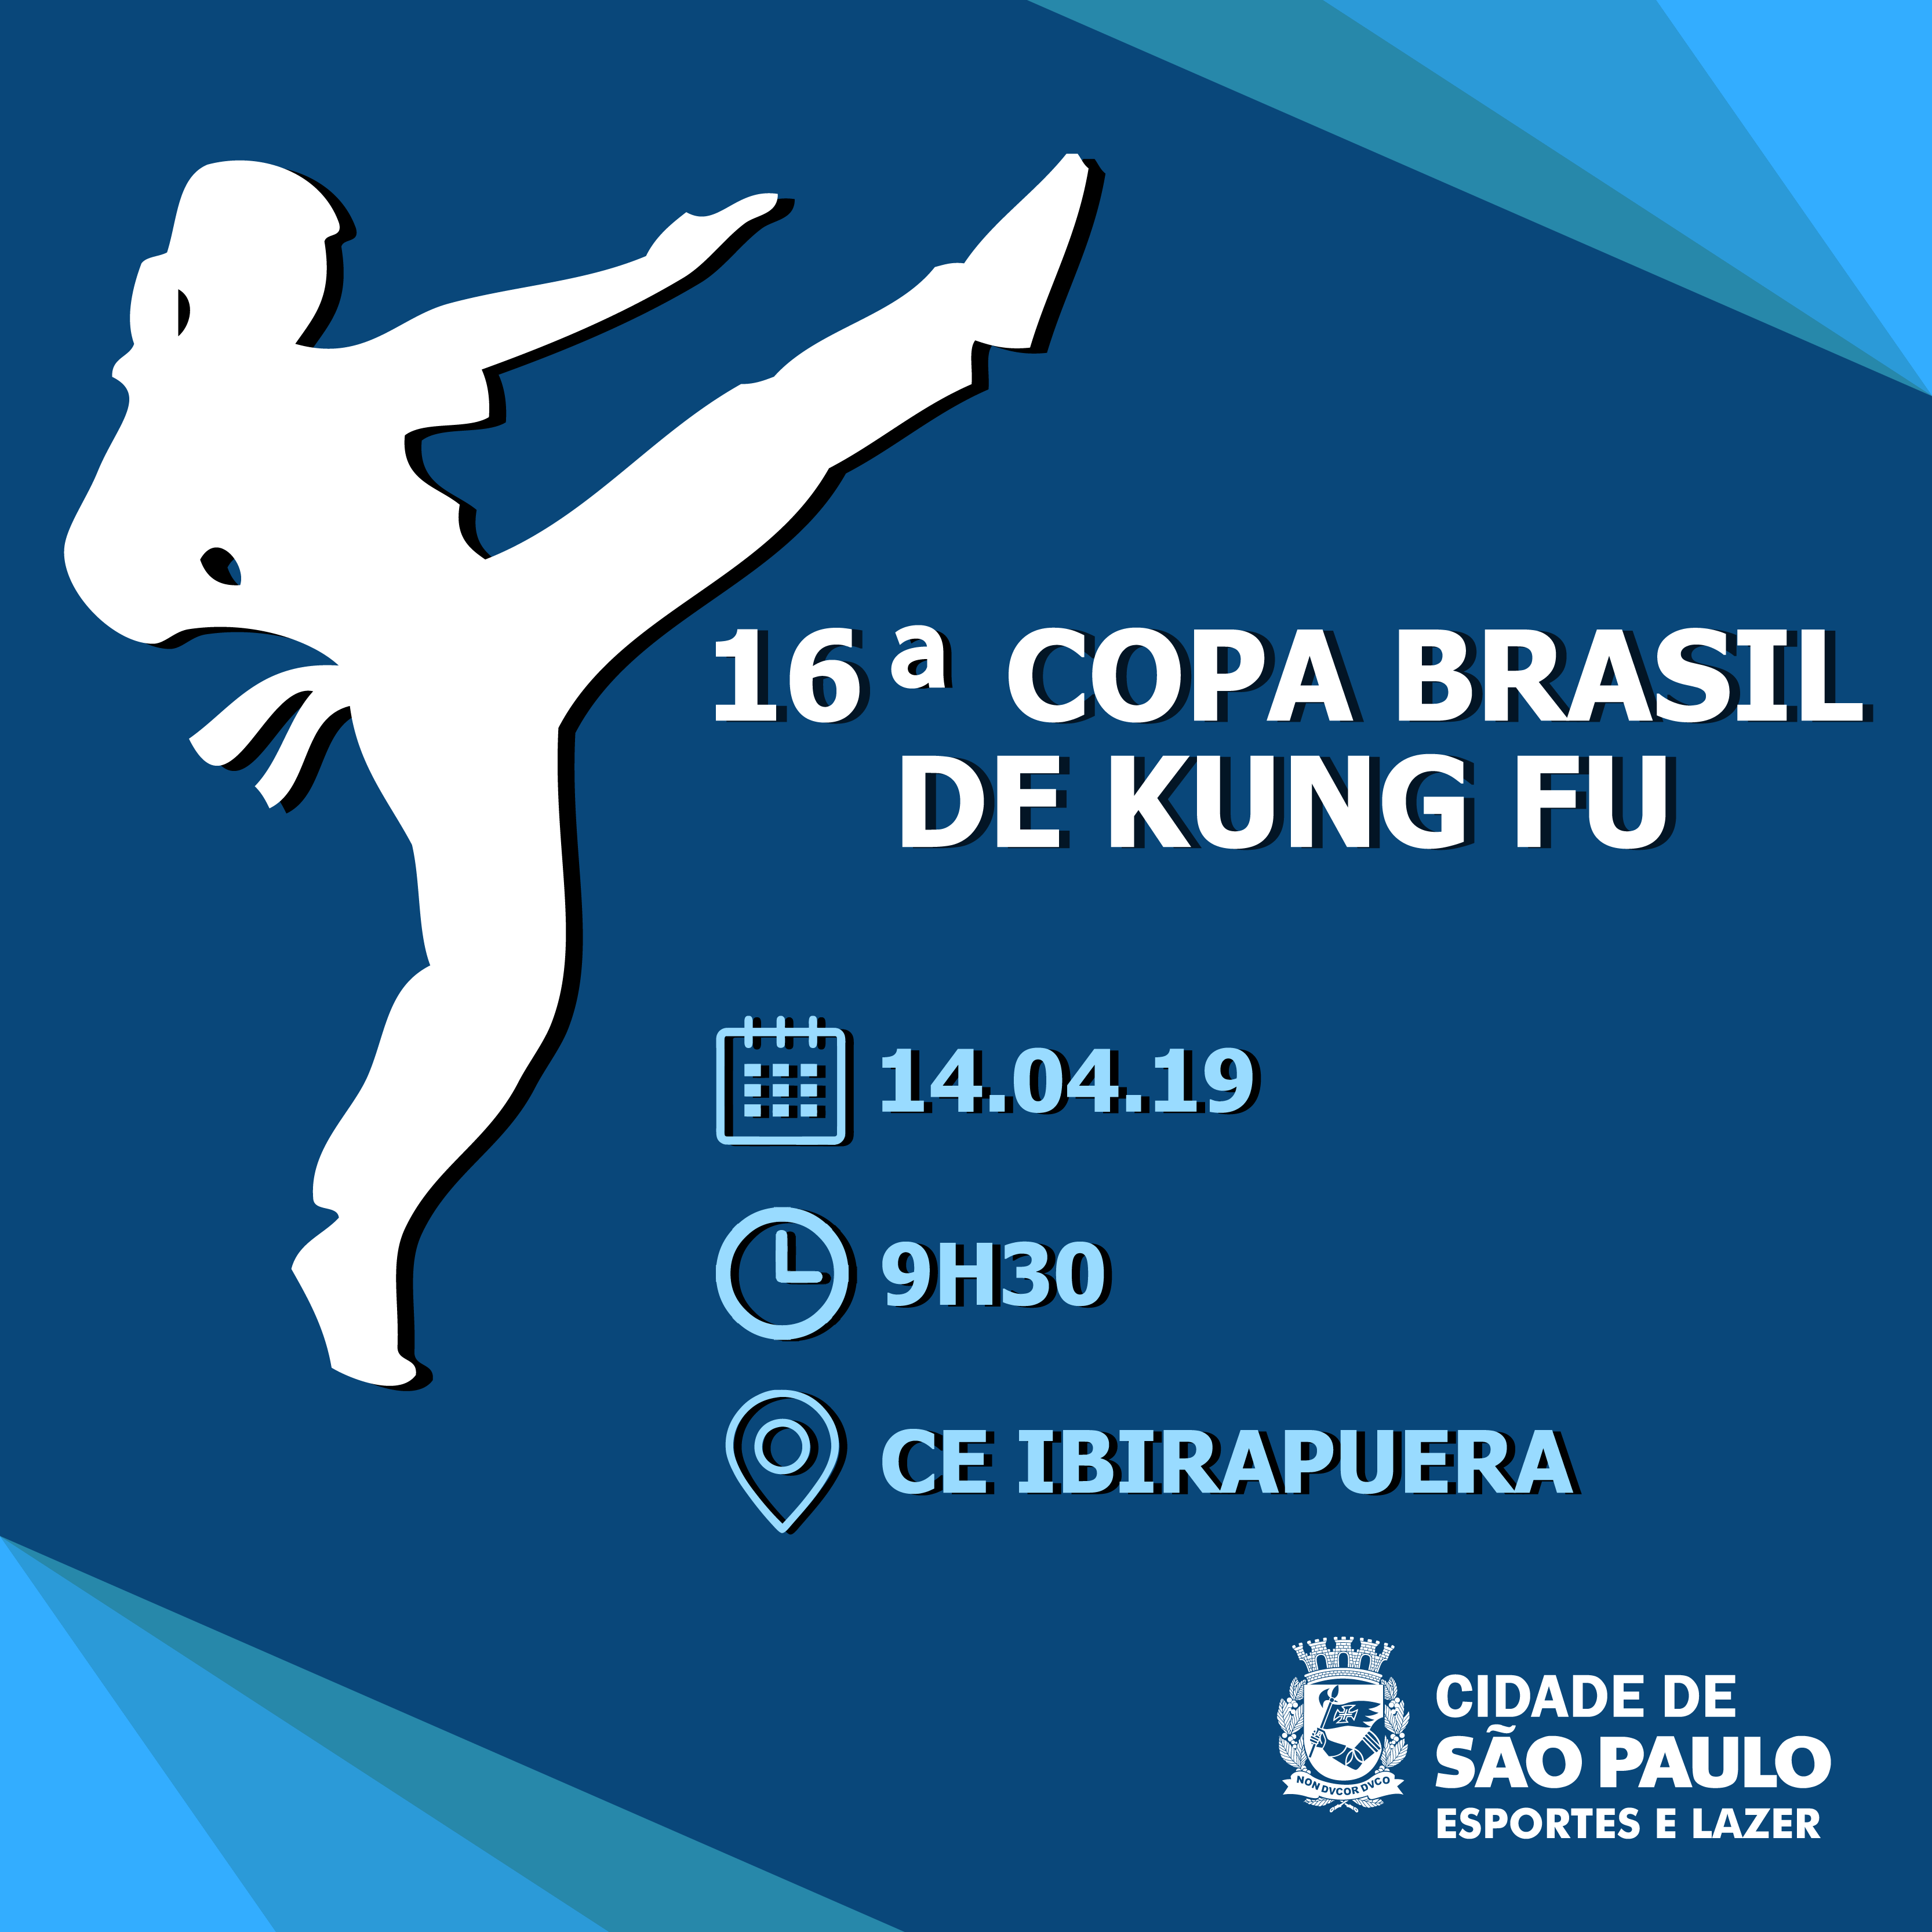 Arte de convite para a 16ª Copa Brasil de Kung Fu com fundo azul escuro e um vetor de uma atleta em branco. No texto, em azul claro, data, horário e local do evento.